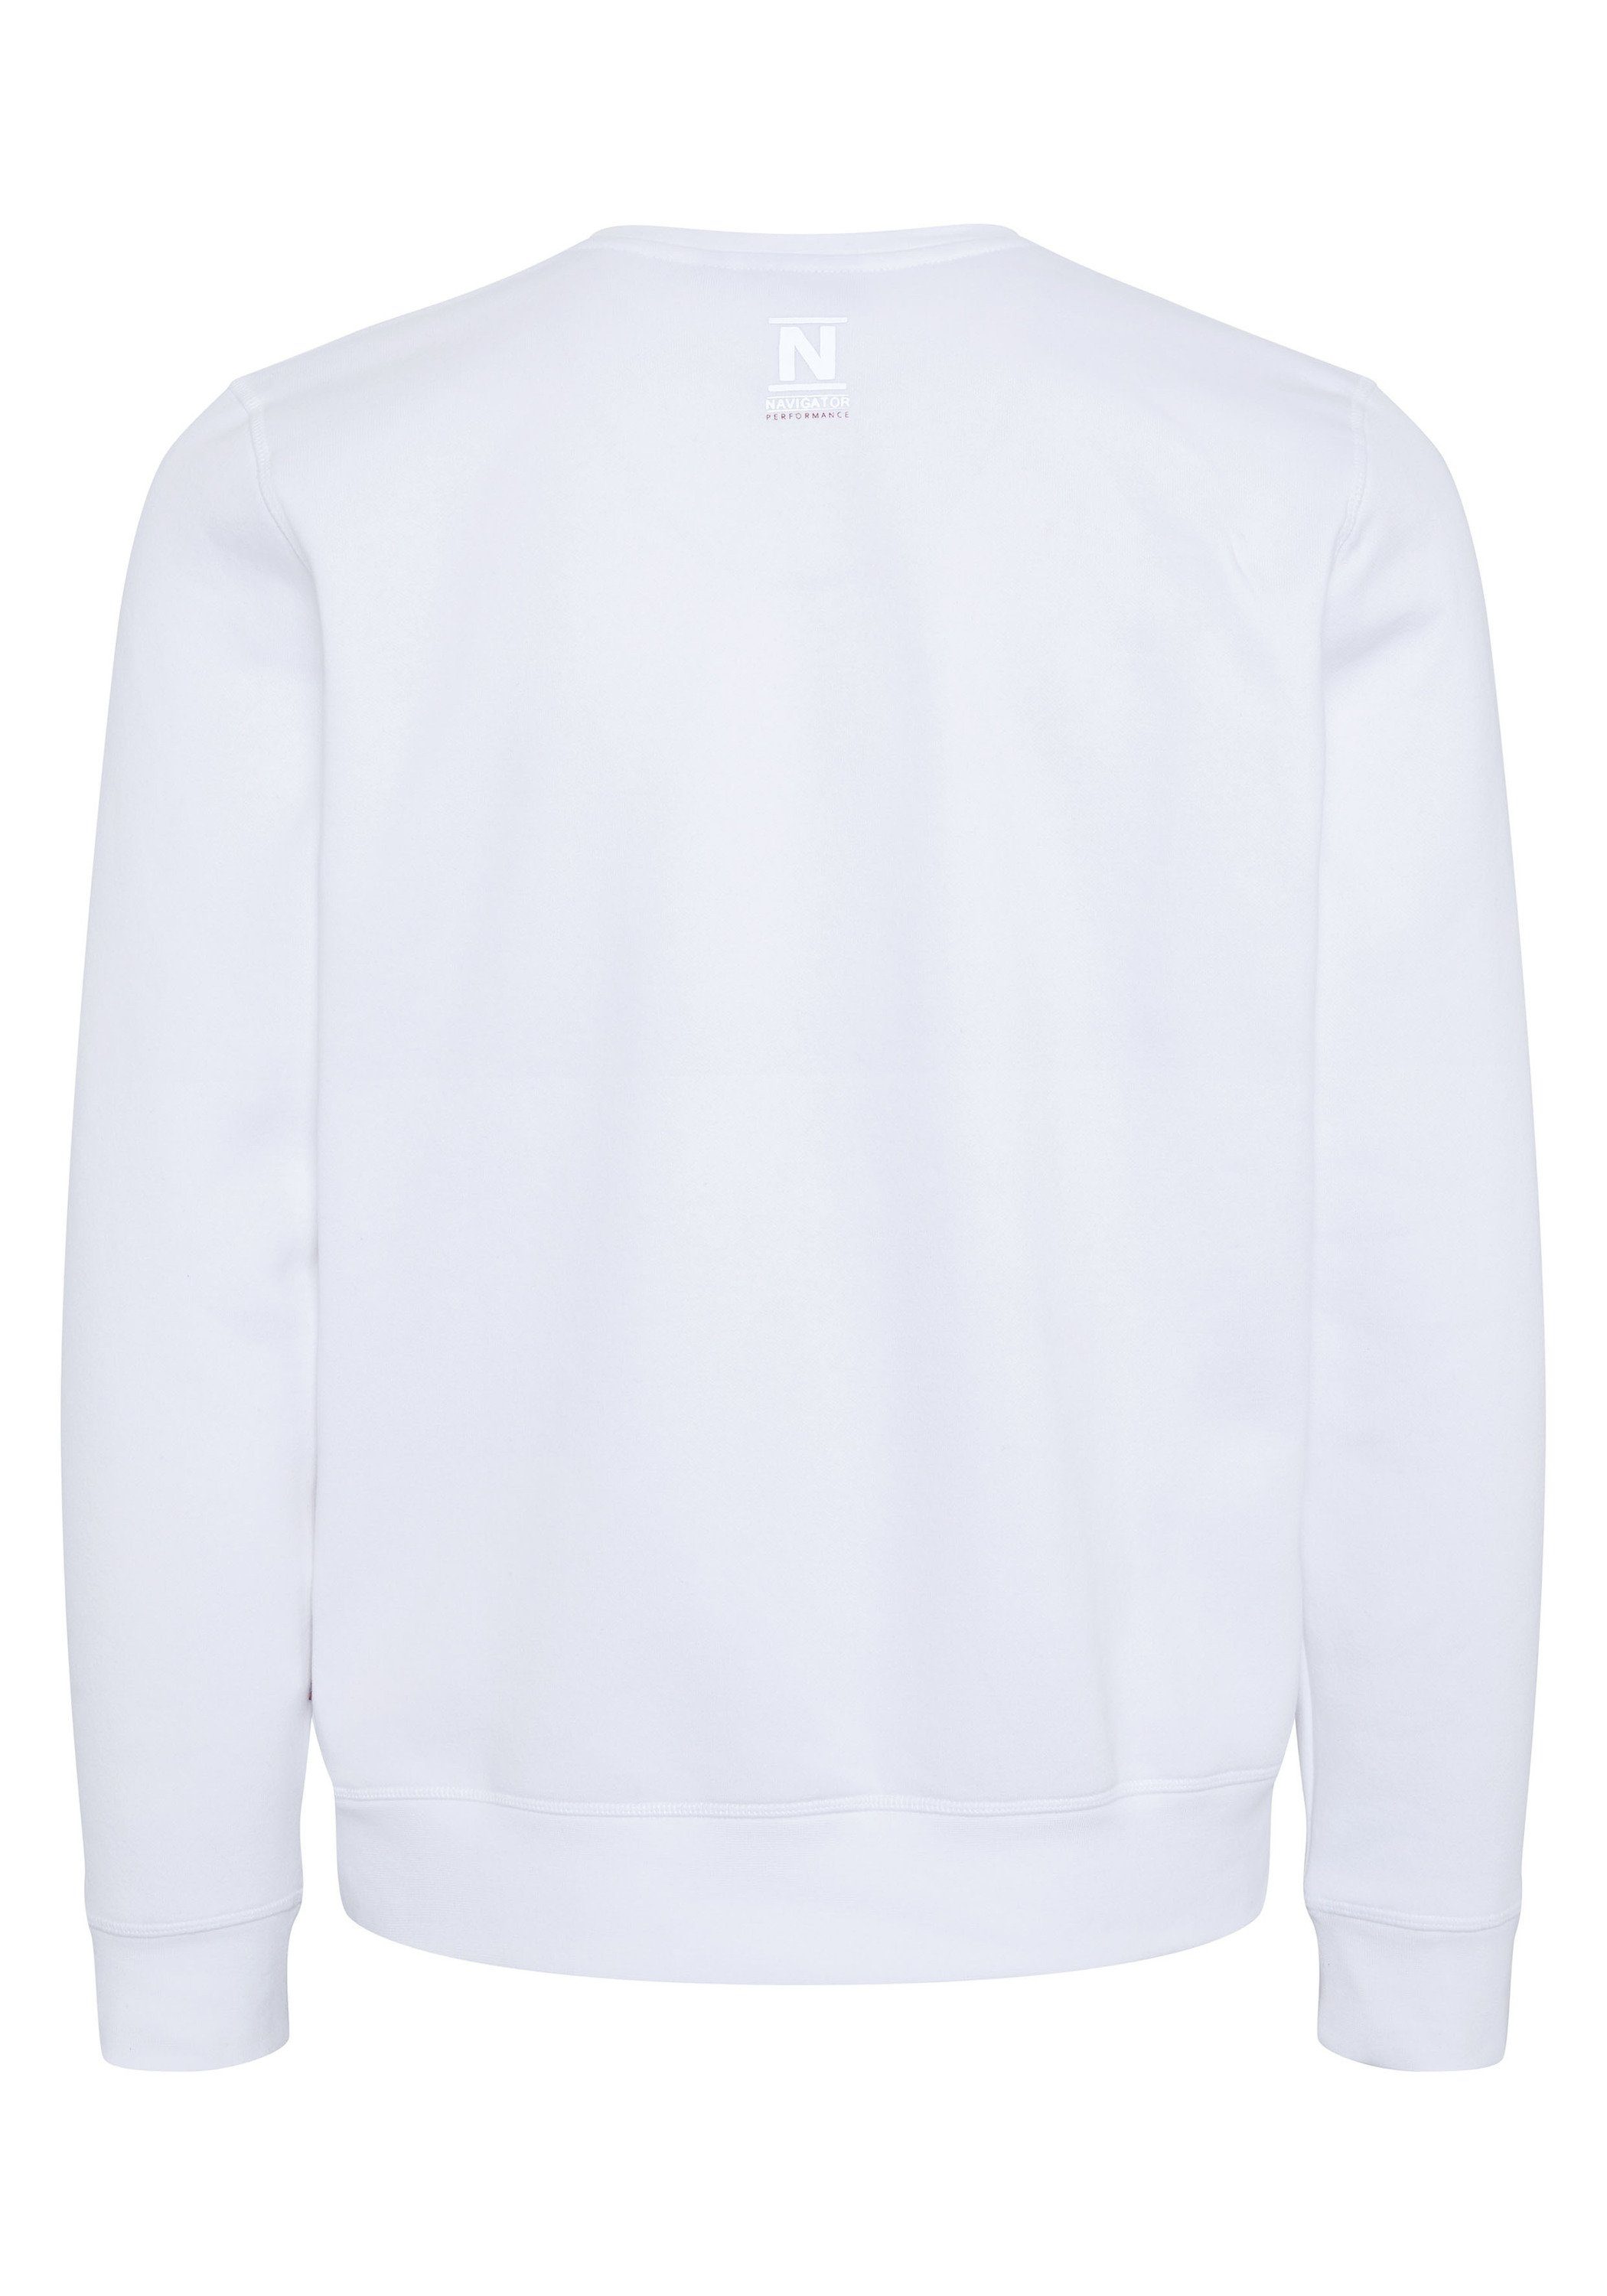 11-0601 NAVIGATOR Logo-Schriftzug White Bright mit Sweatshirt